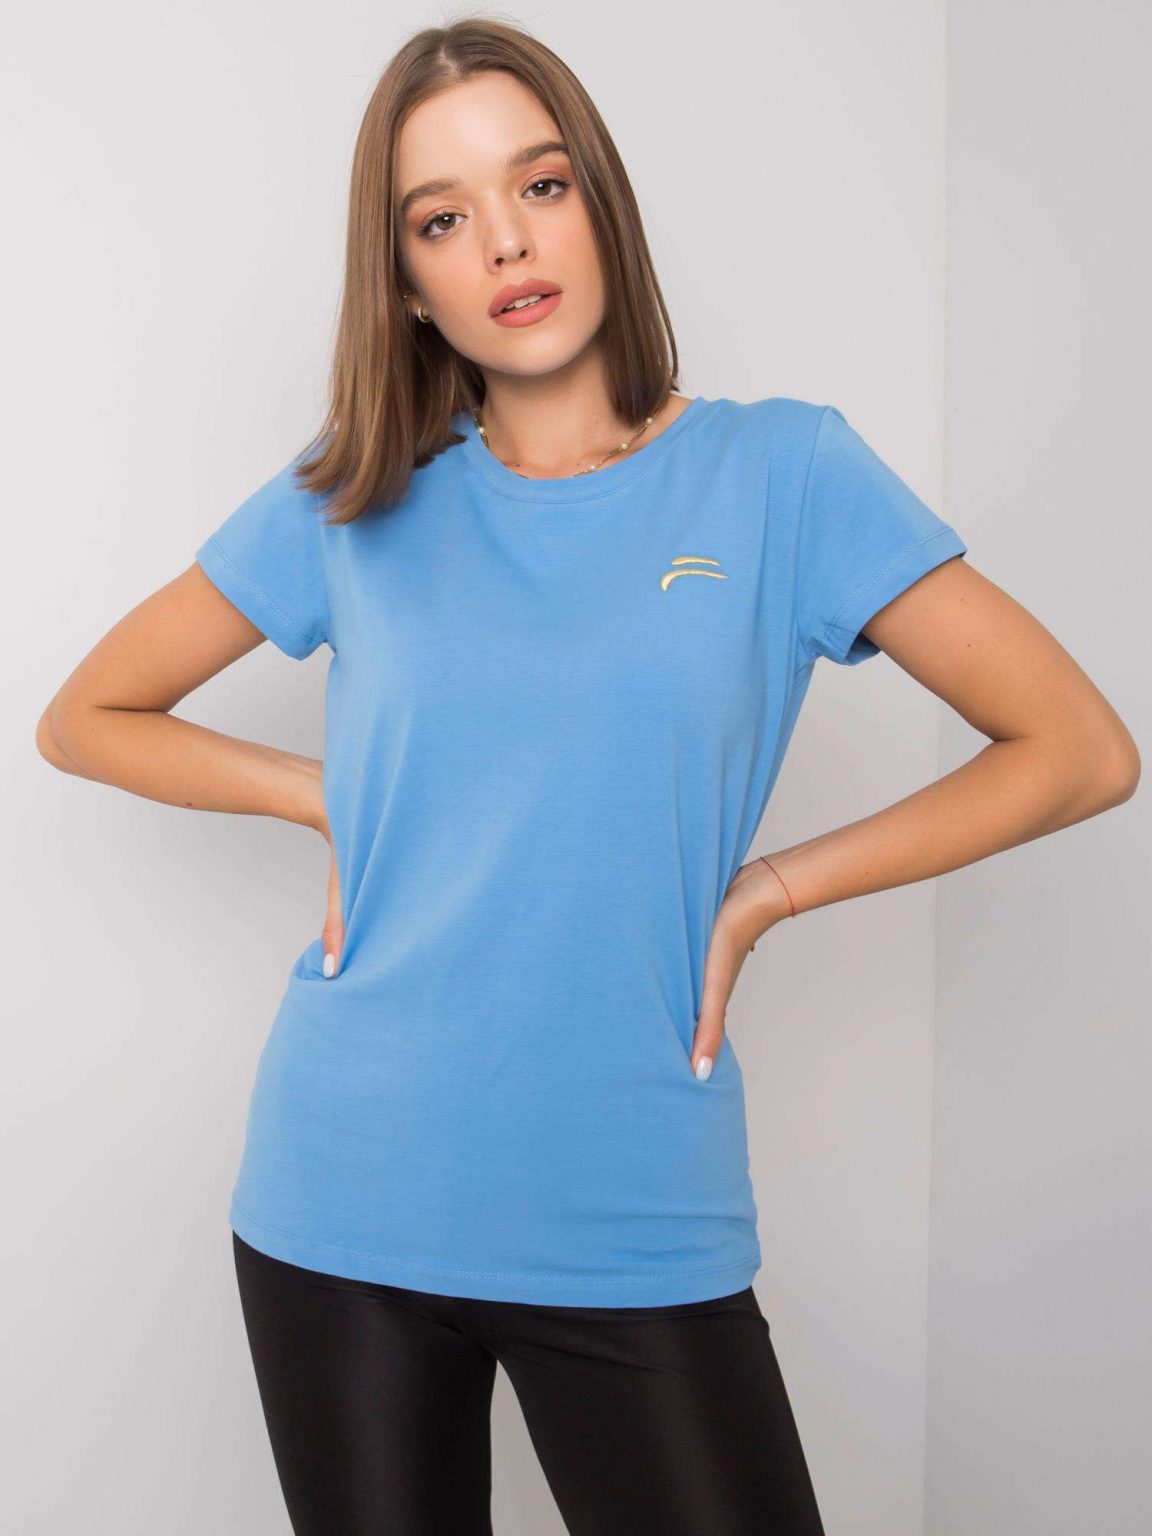 Niebieski t-shirt damski Eudice FOR FITNESS